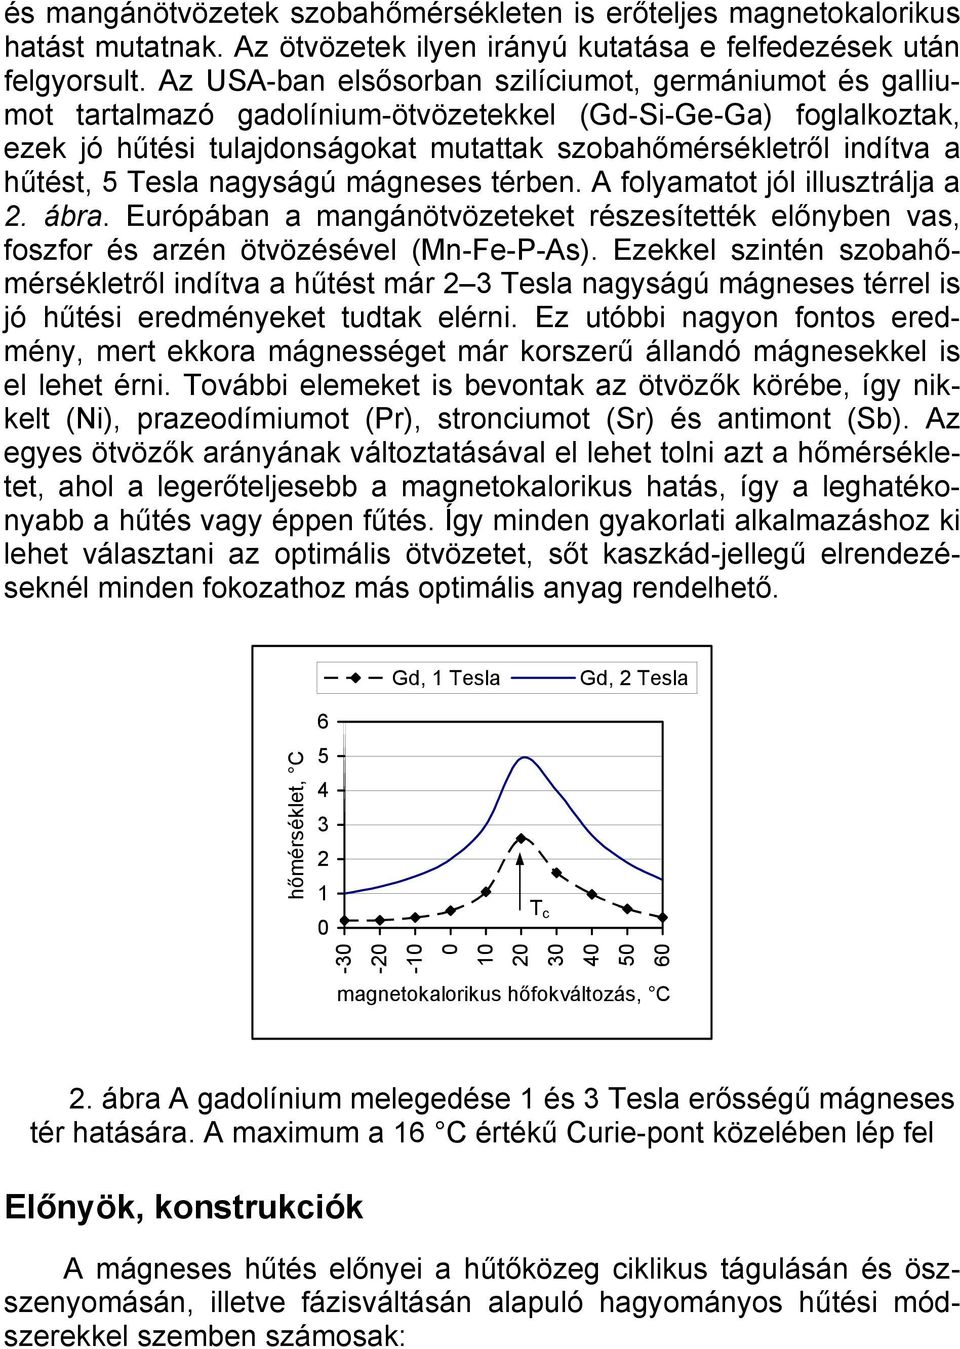 Mágneses hűtés szobahőmérsékleten - PDF Ingyenes letöltés